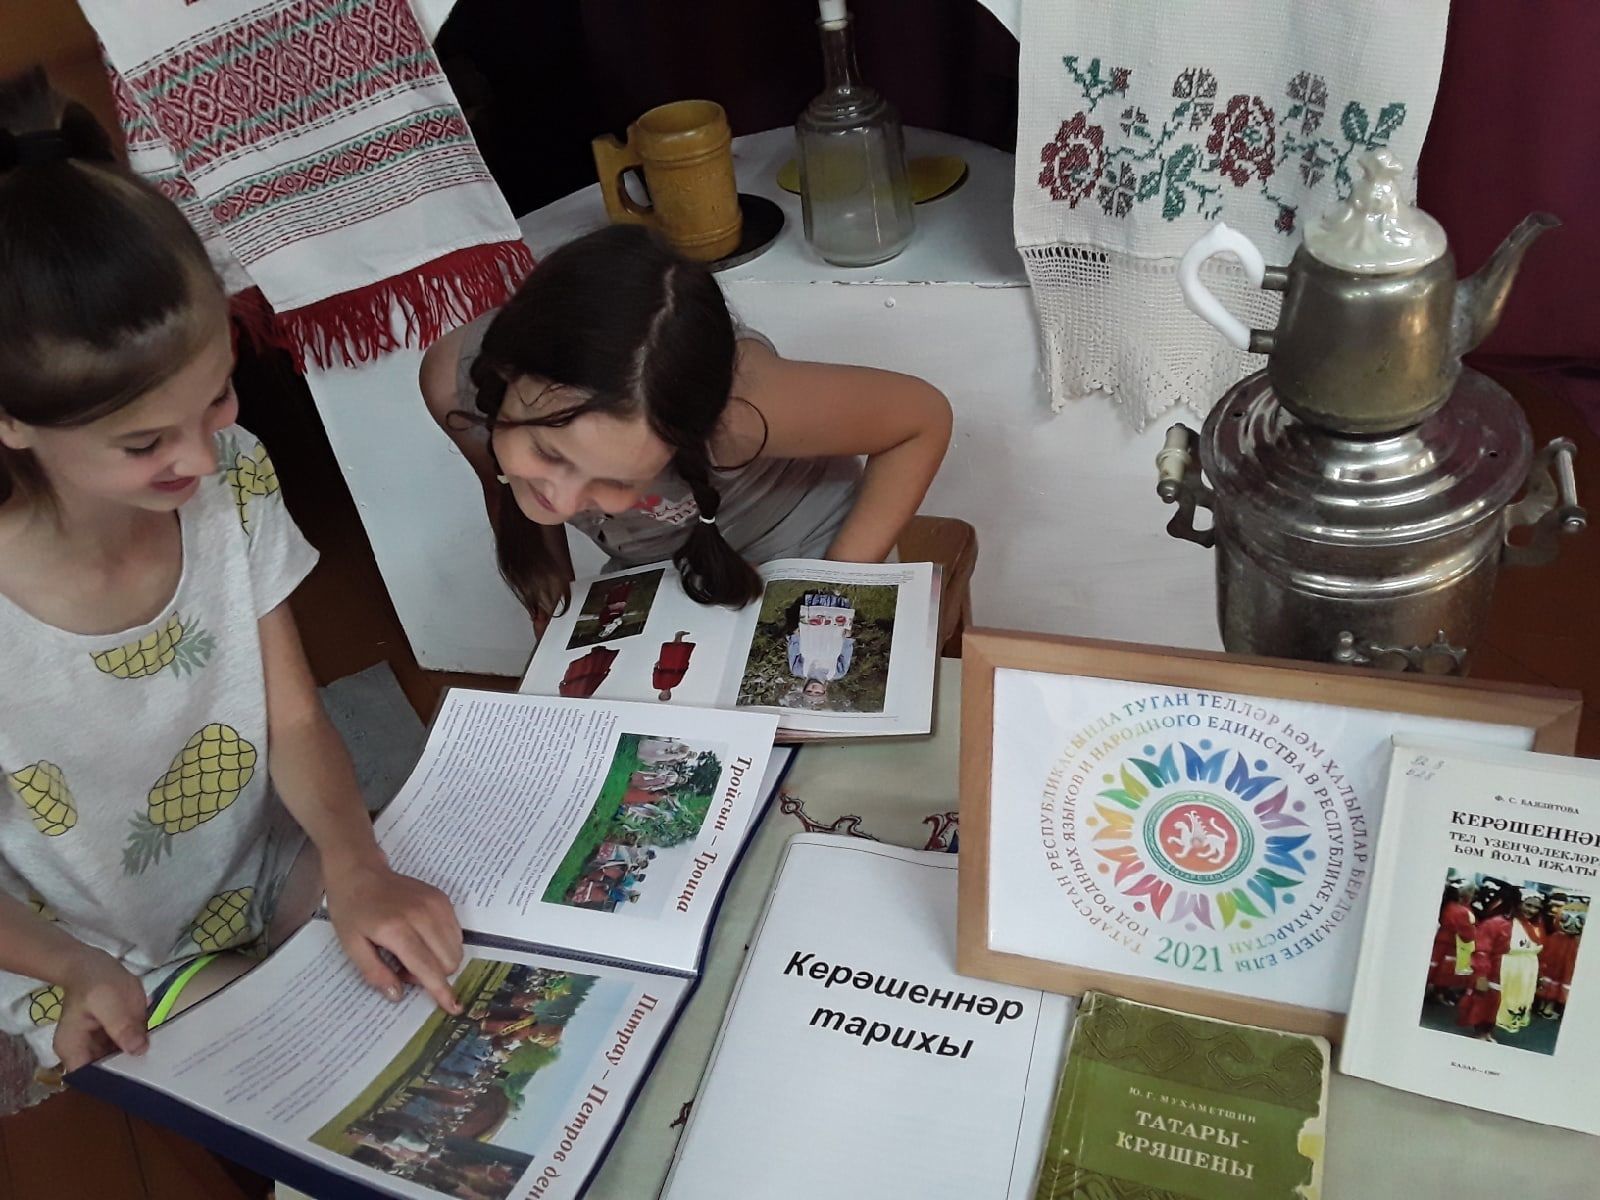 Дети чистопольского села слушали песни кряшенского народа, знакомились с его обычаями